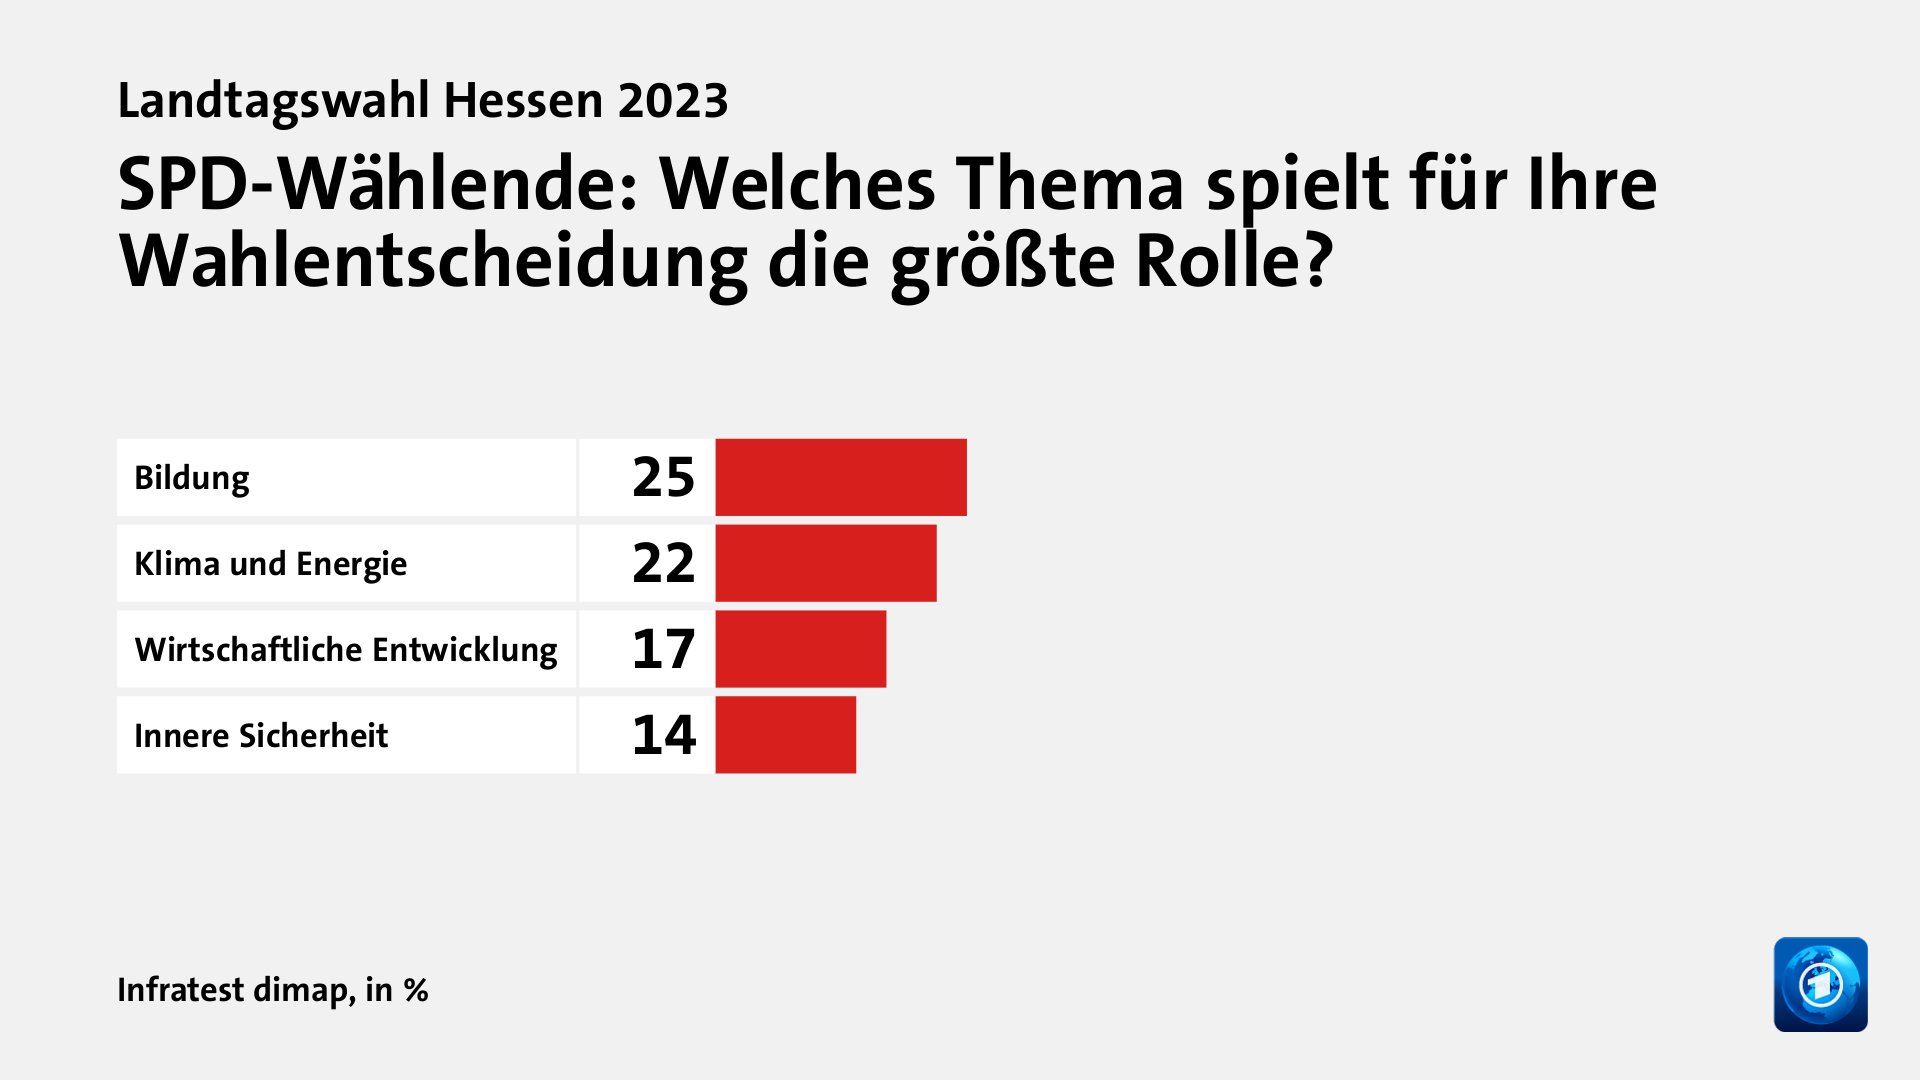 SPD-Wählende: Welches Thema spielt für Ihre Wahlentscheidung die größte Rolle?, in %: Bildung 25, Klima und Energie 22, Wirtschaftliche Entwicklung 17, Innere Sicherheit 14, Quelle: Infratest dimap